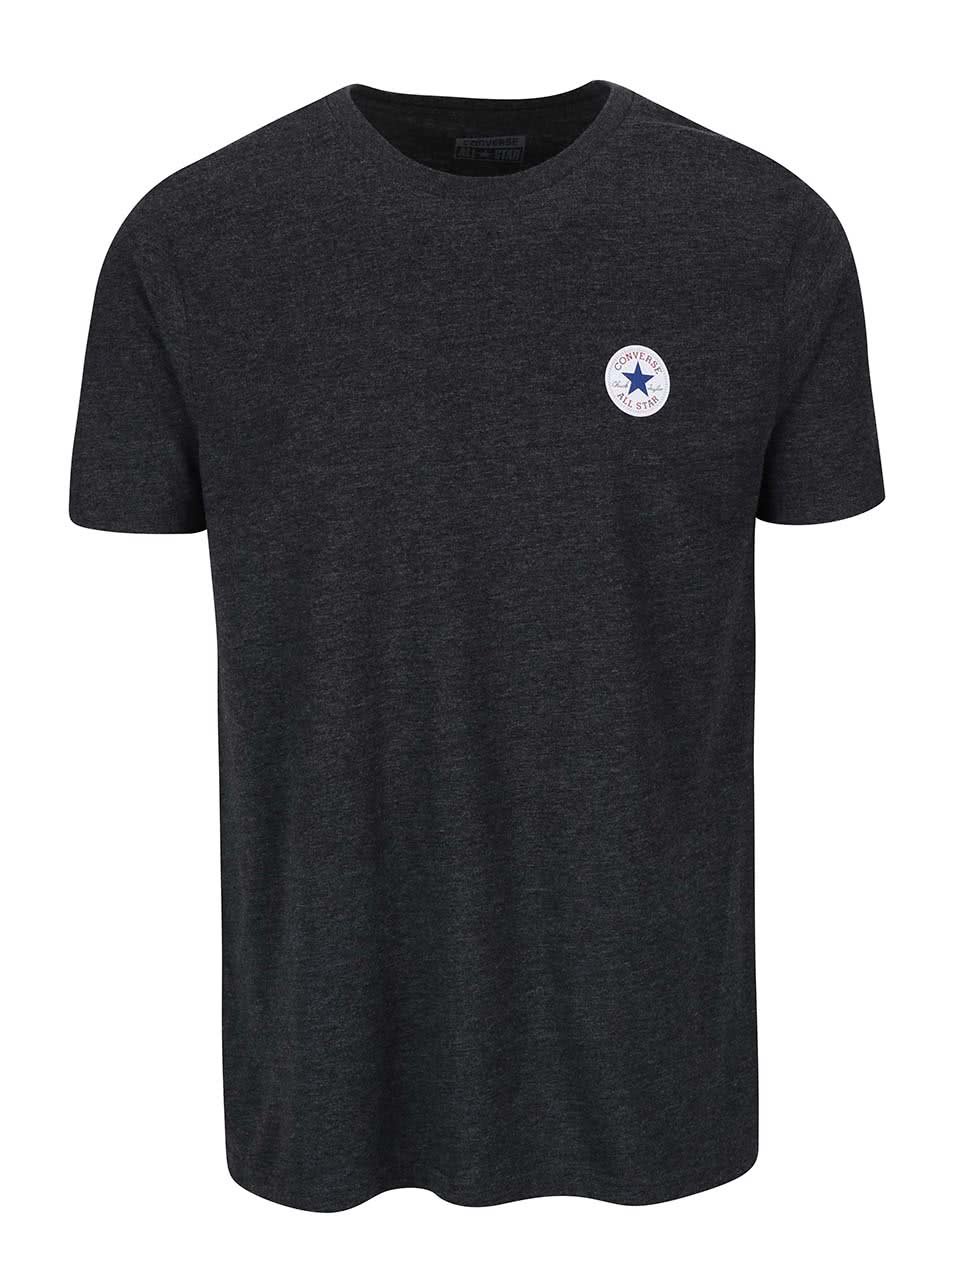 Tmavě šedé pánské triko s malým logem Converse